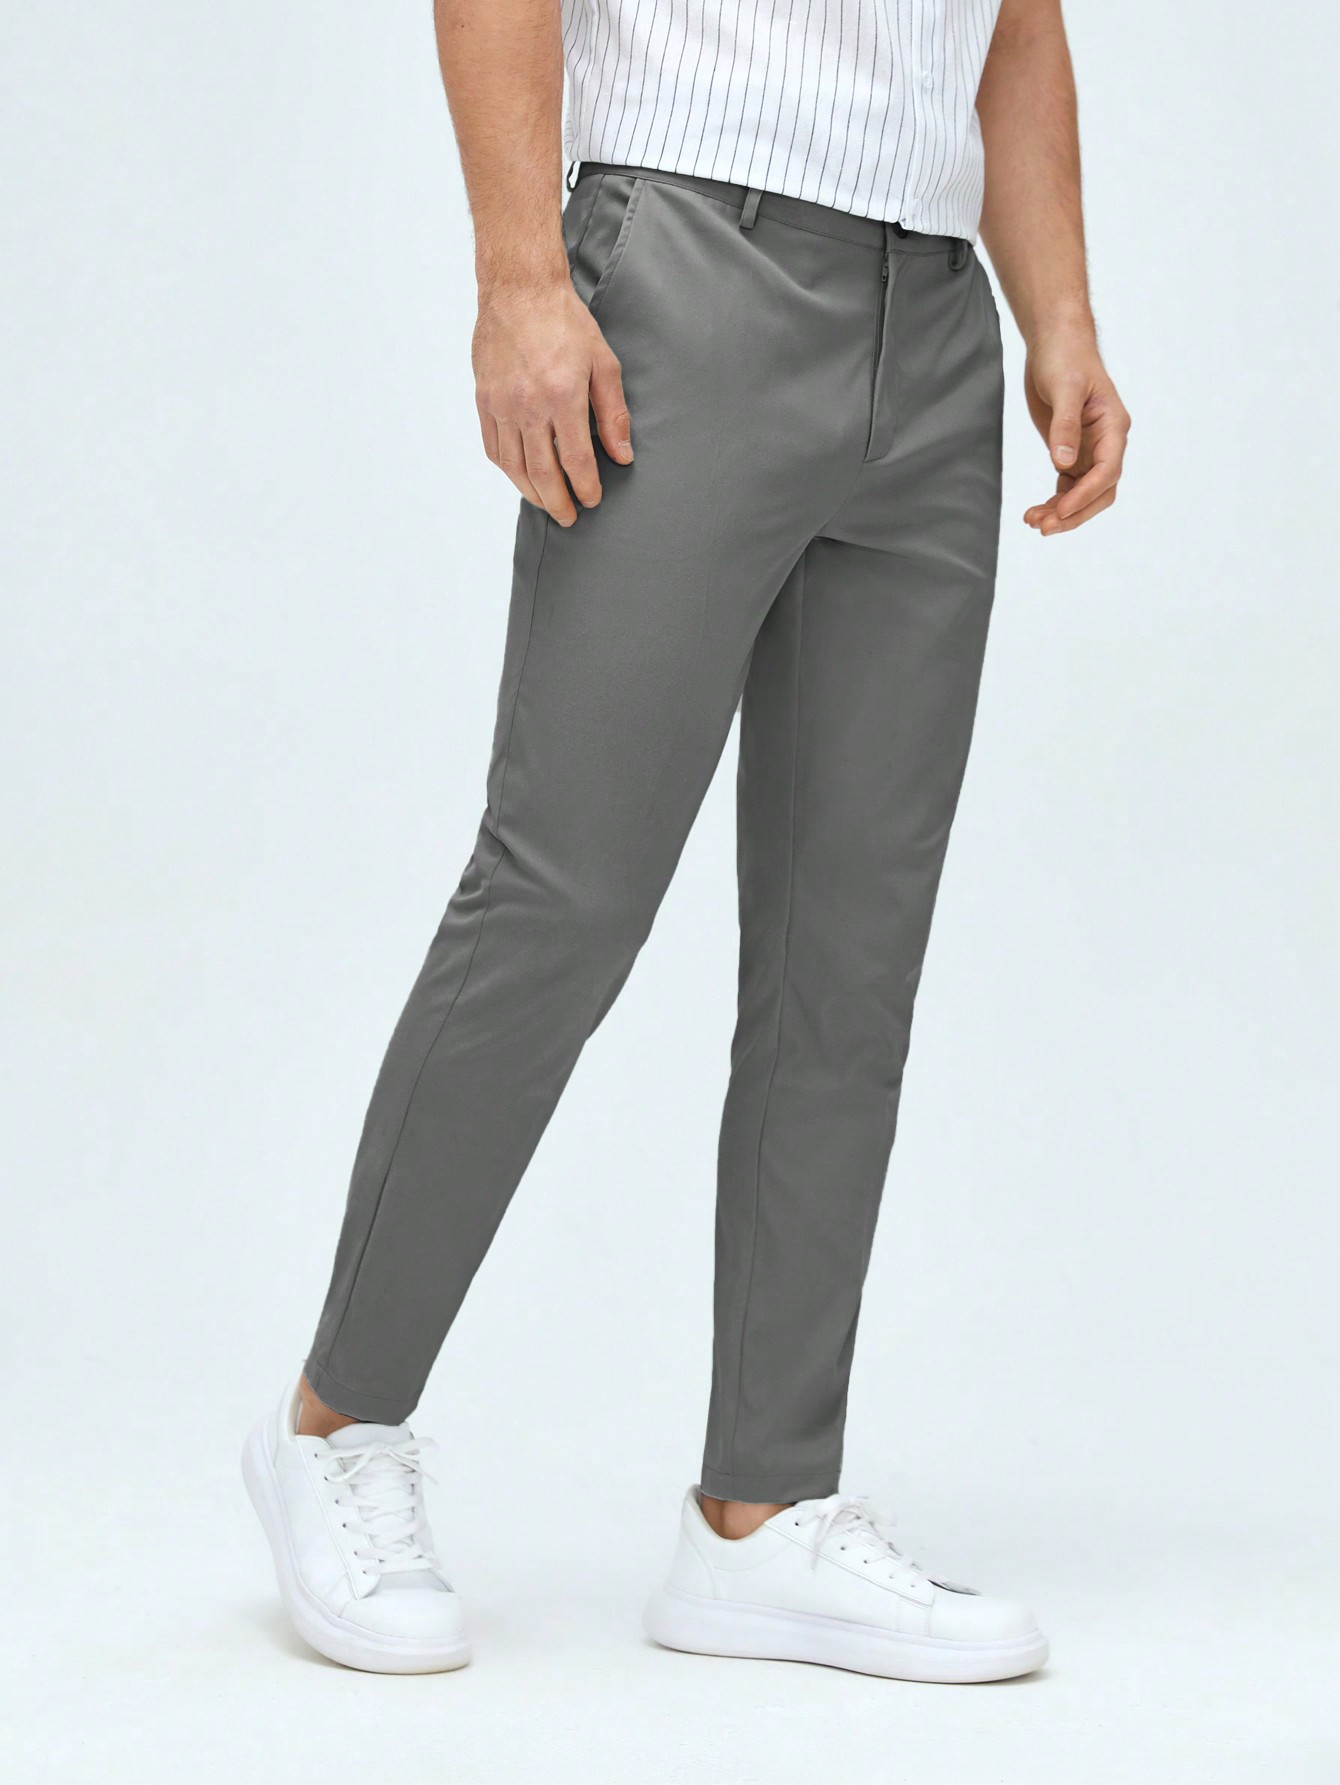 Мужские классические классические брюки из тканого материала с боковыми карманами Manfinity Mode, темно-серый фото